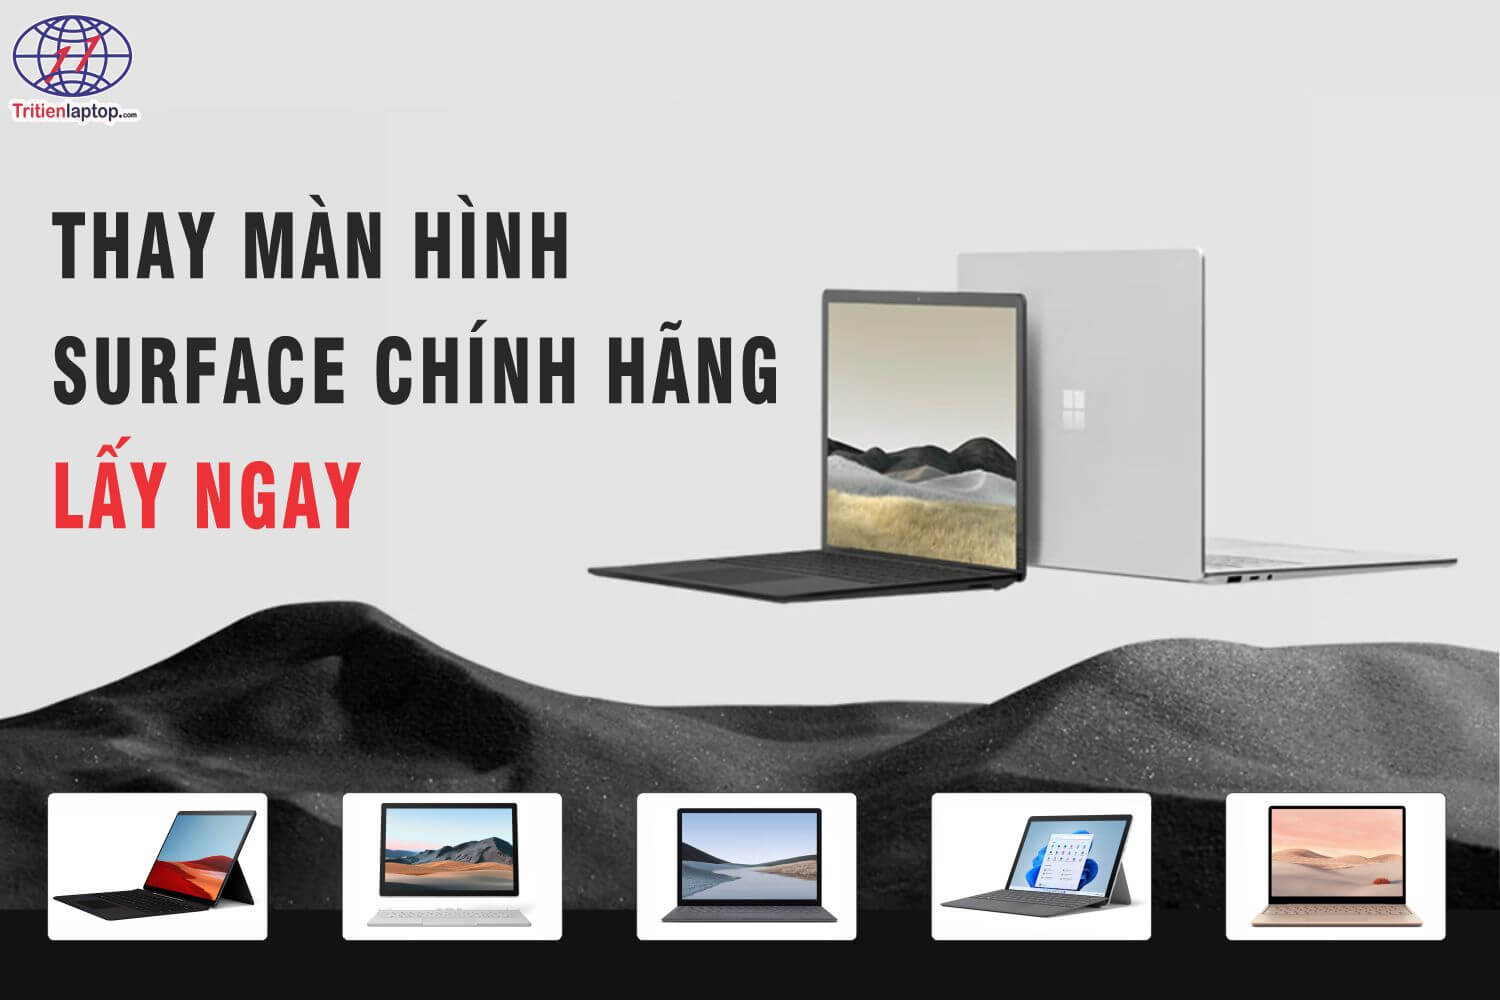 Dịch vụ thay màn hình Surface chính hãng lấy ngay tại Hà Nội